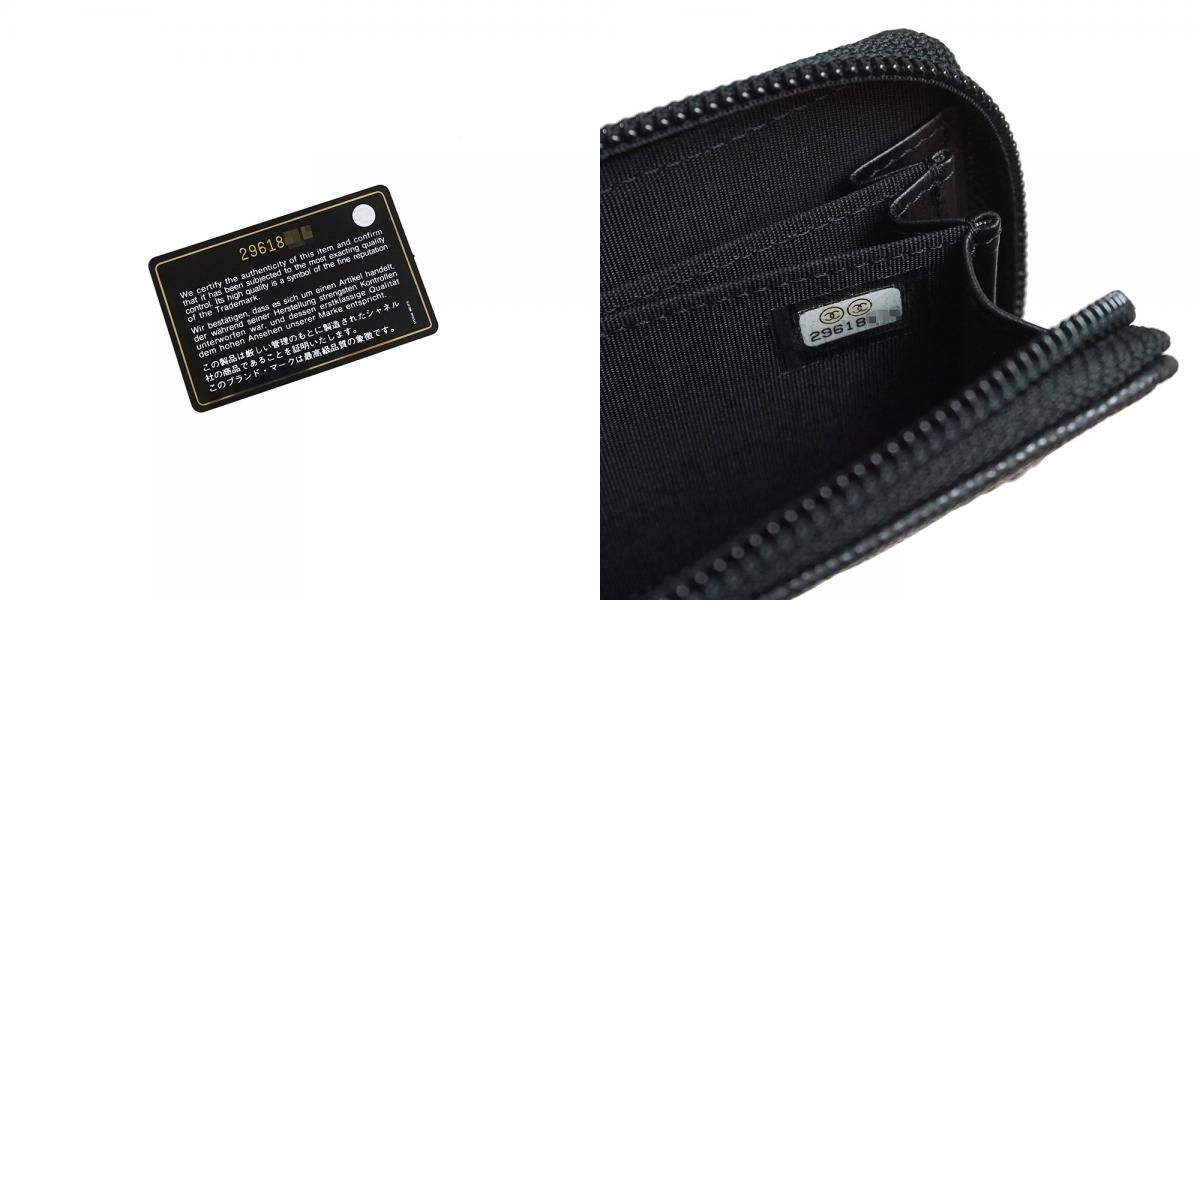 シャネル ボーイシャネル ジップ コインパース コインケース 小銭入れ 財布 キャビアスキン レザー ブラック 黒 アンティークシルバー金具 A80602 CHANEL（新品・未使用品）